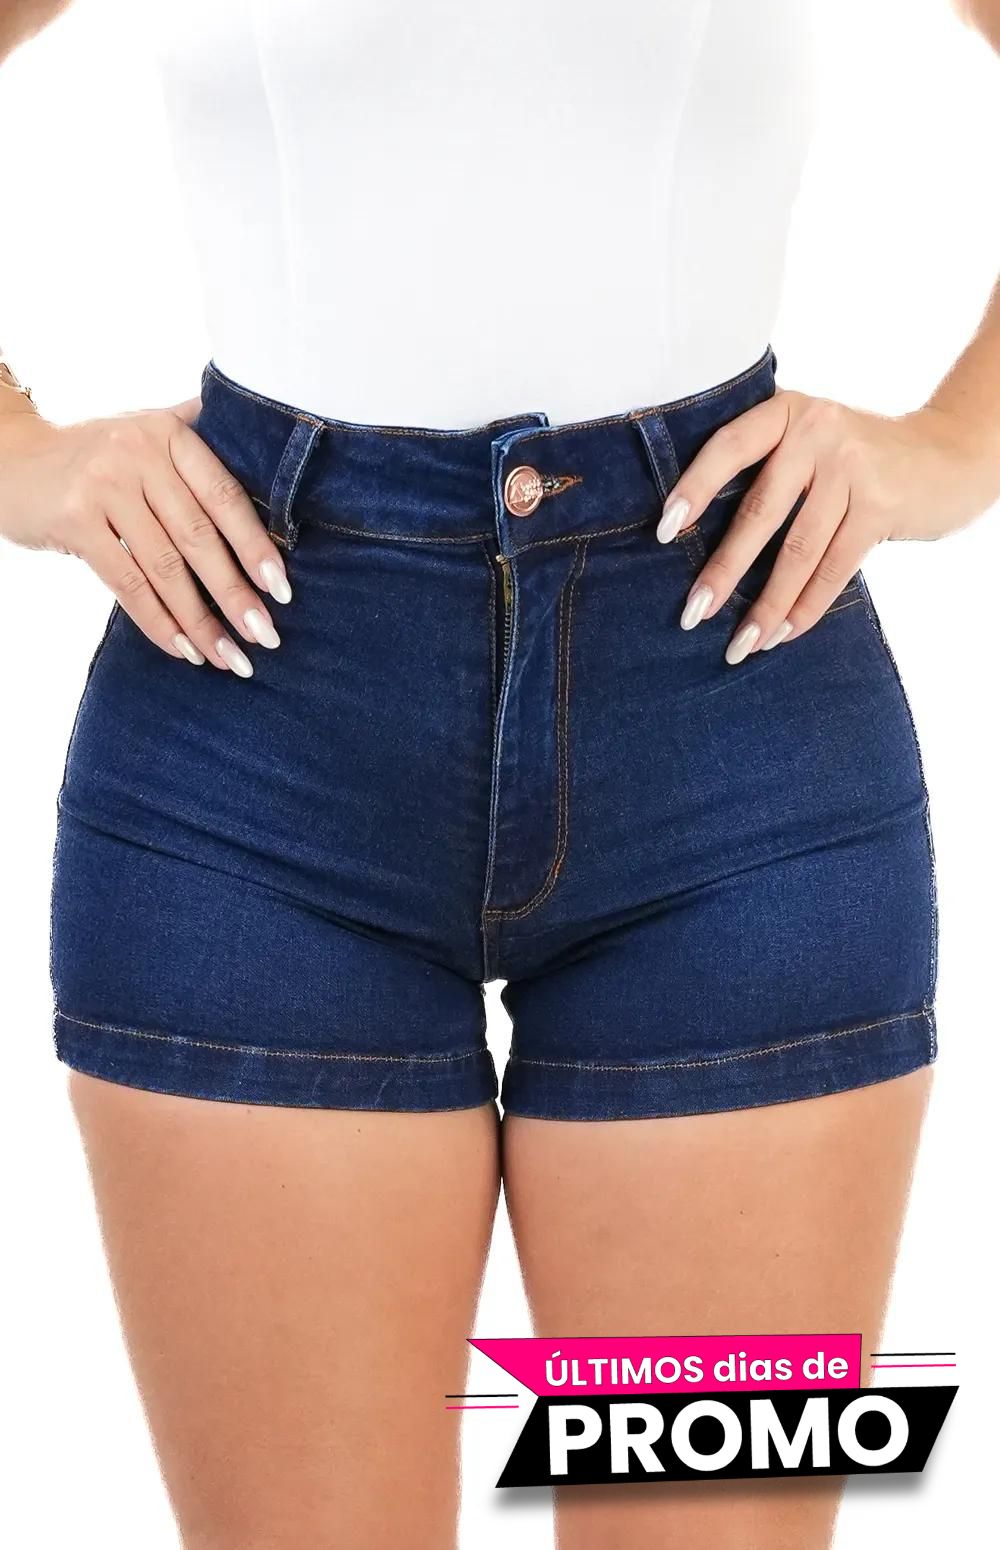 Short jeans Feminino, SKU 321019, Composição: 98% Algodão + 2